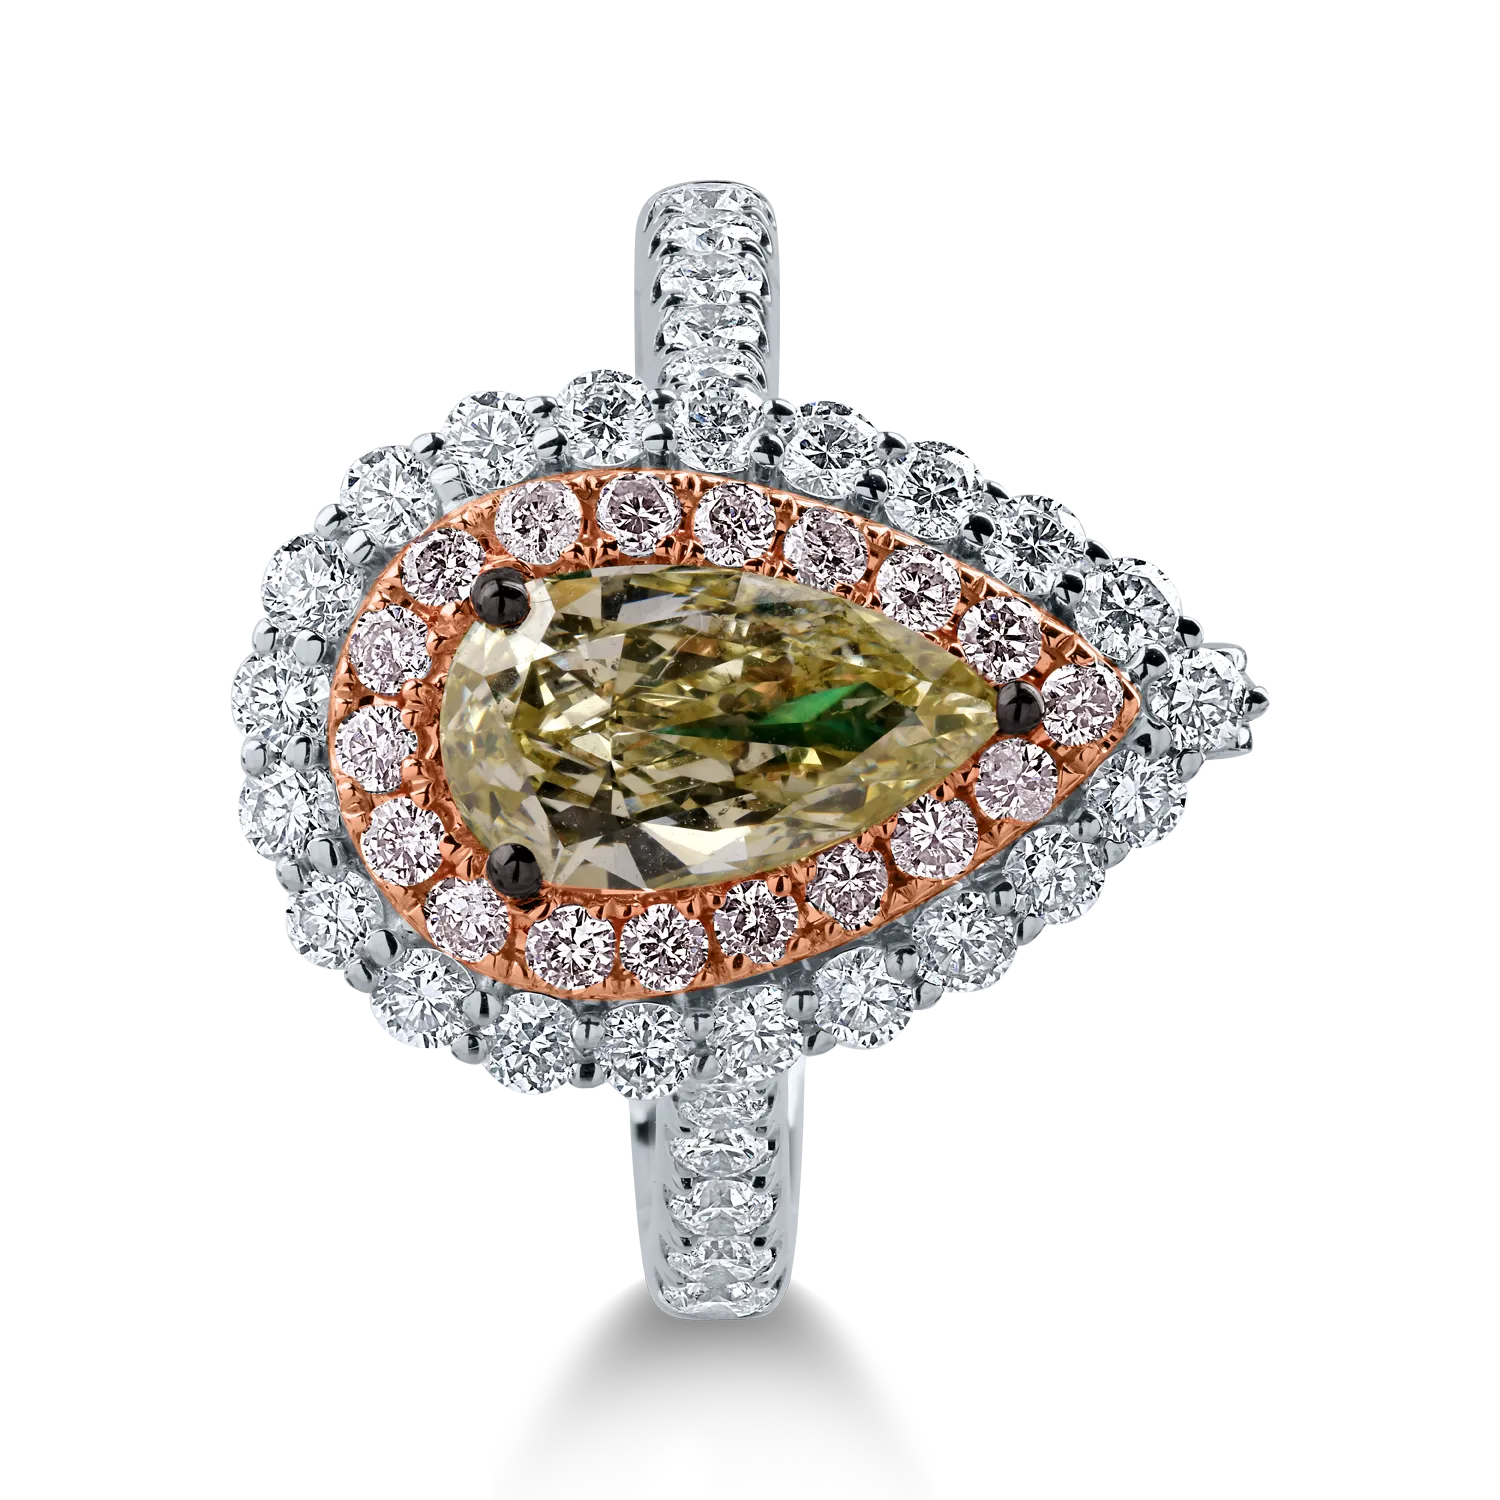 Pierścionek z białego różowego złota z jednym centralnym zielonym diamentem o masie 1.27ct oraz bezbarwnymi i różowymi diamentami o masie 1.12ct „halo pave”